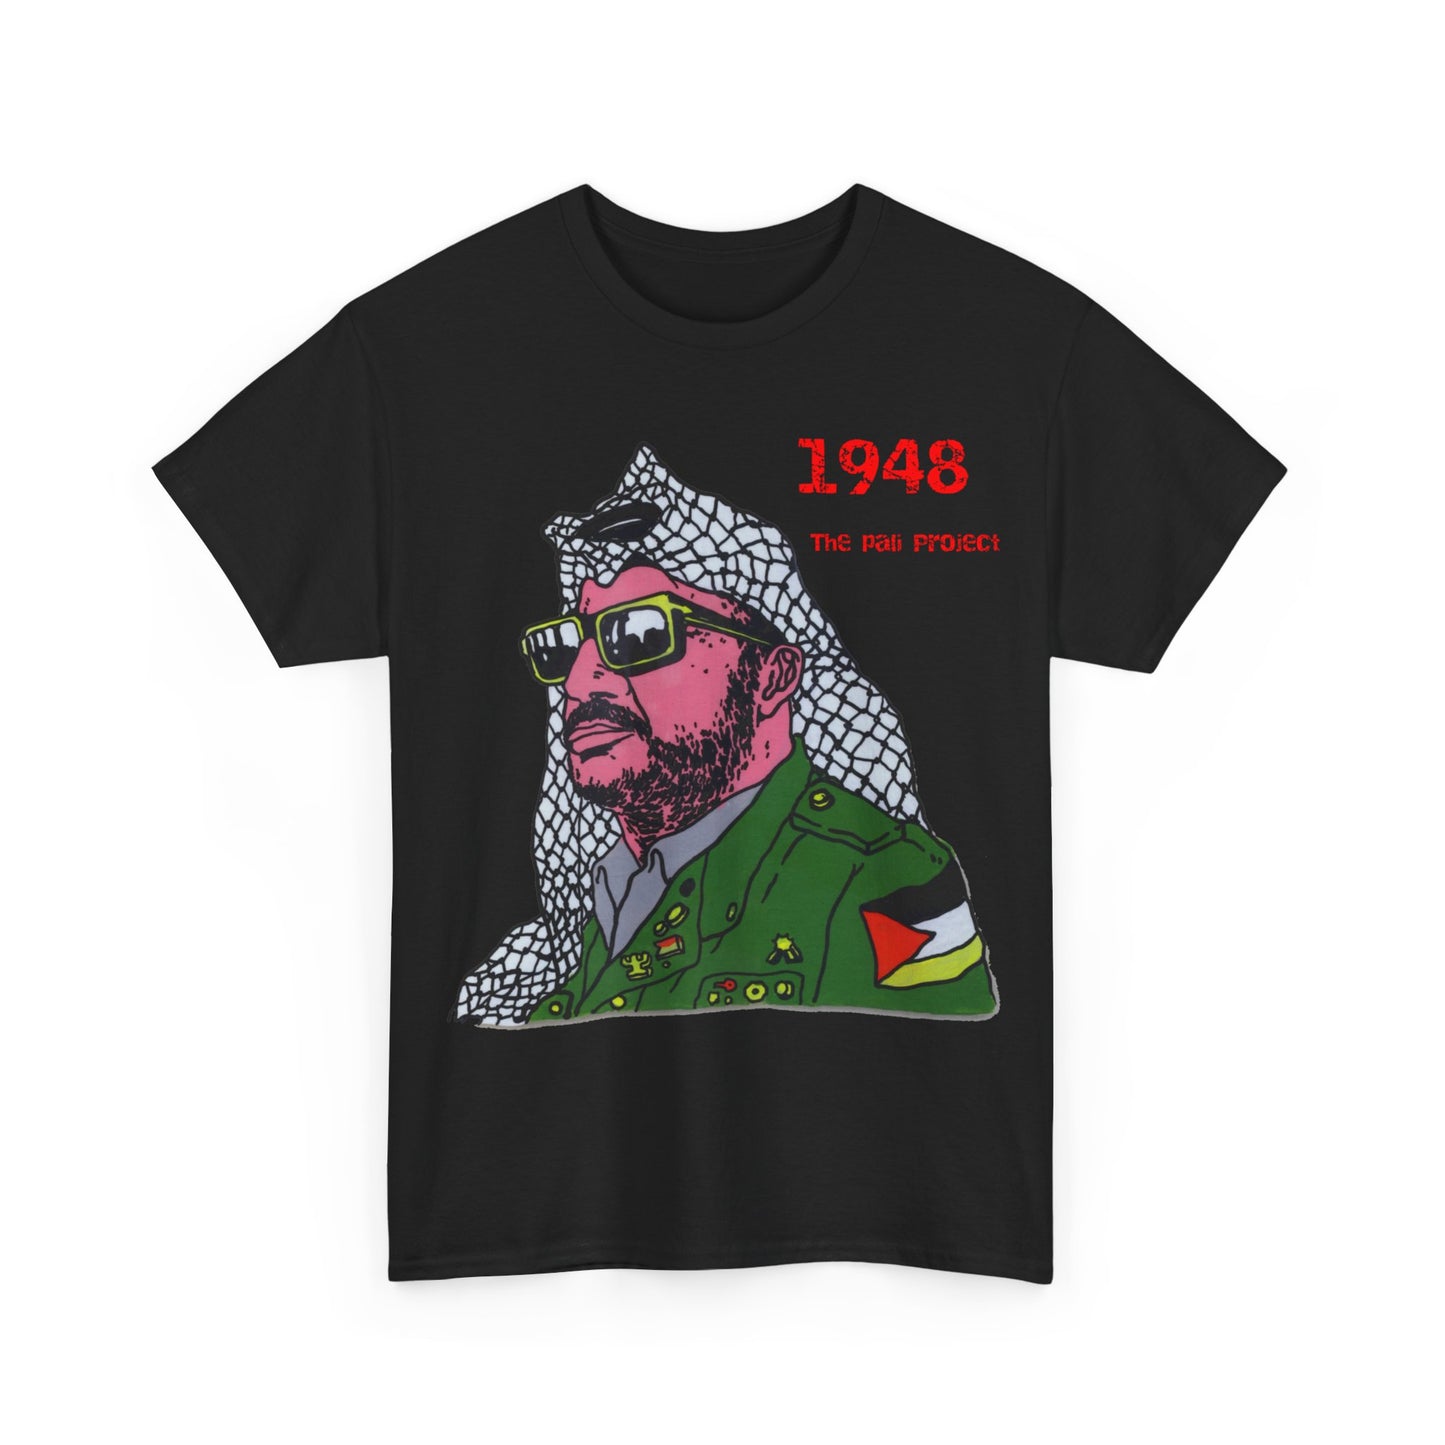 The Arafat T